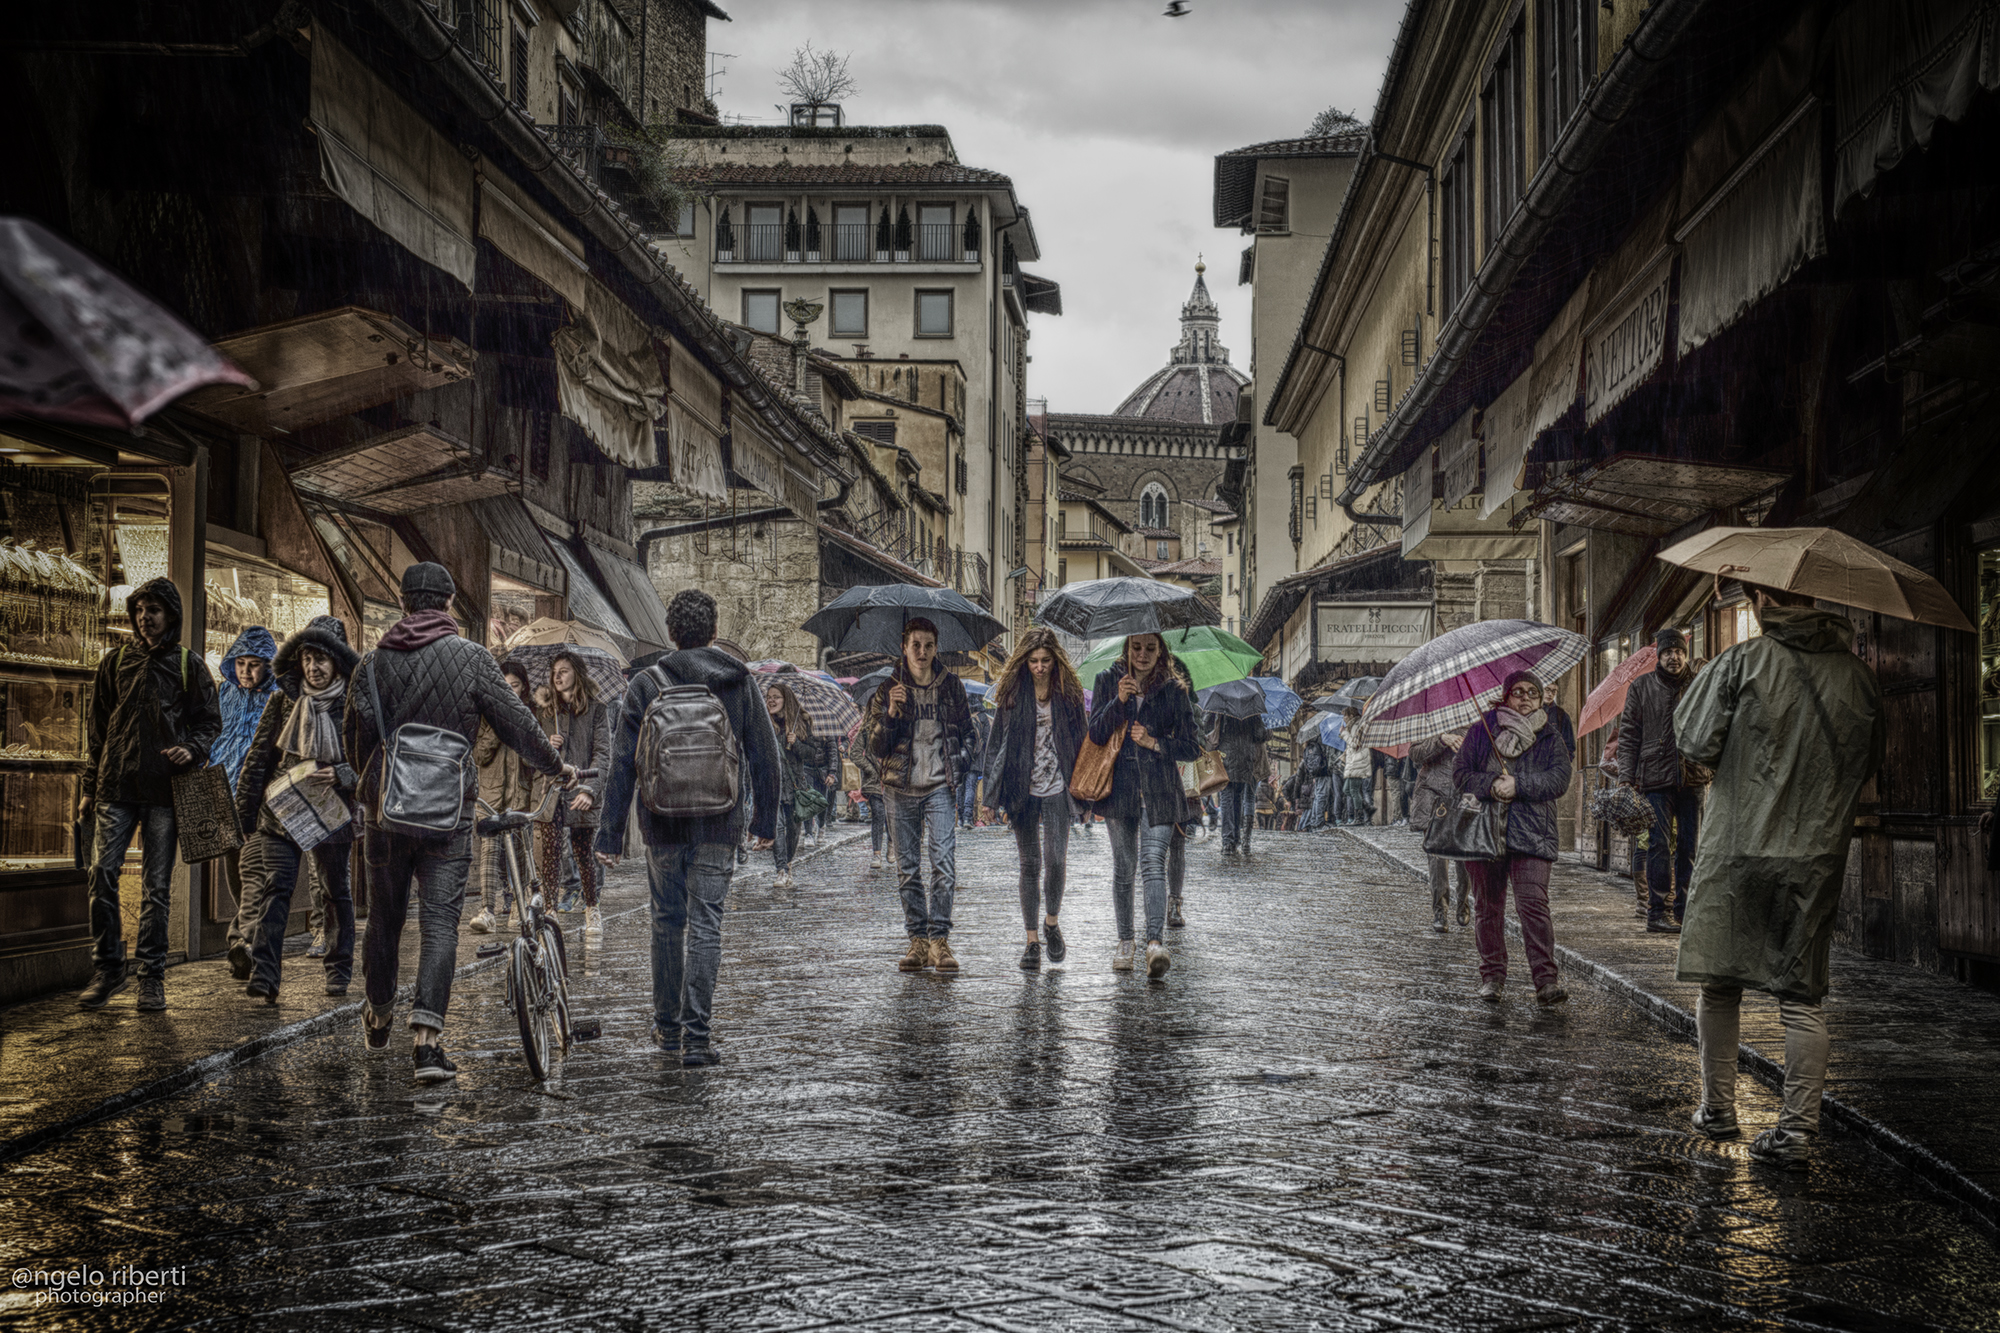 In the rain ... the Ponte Vecchio (fi)...